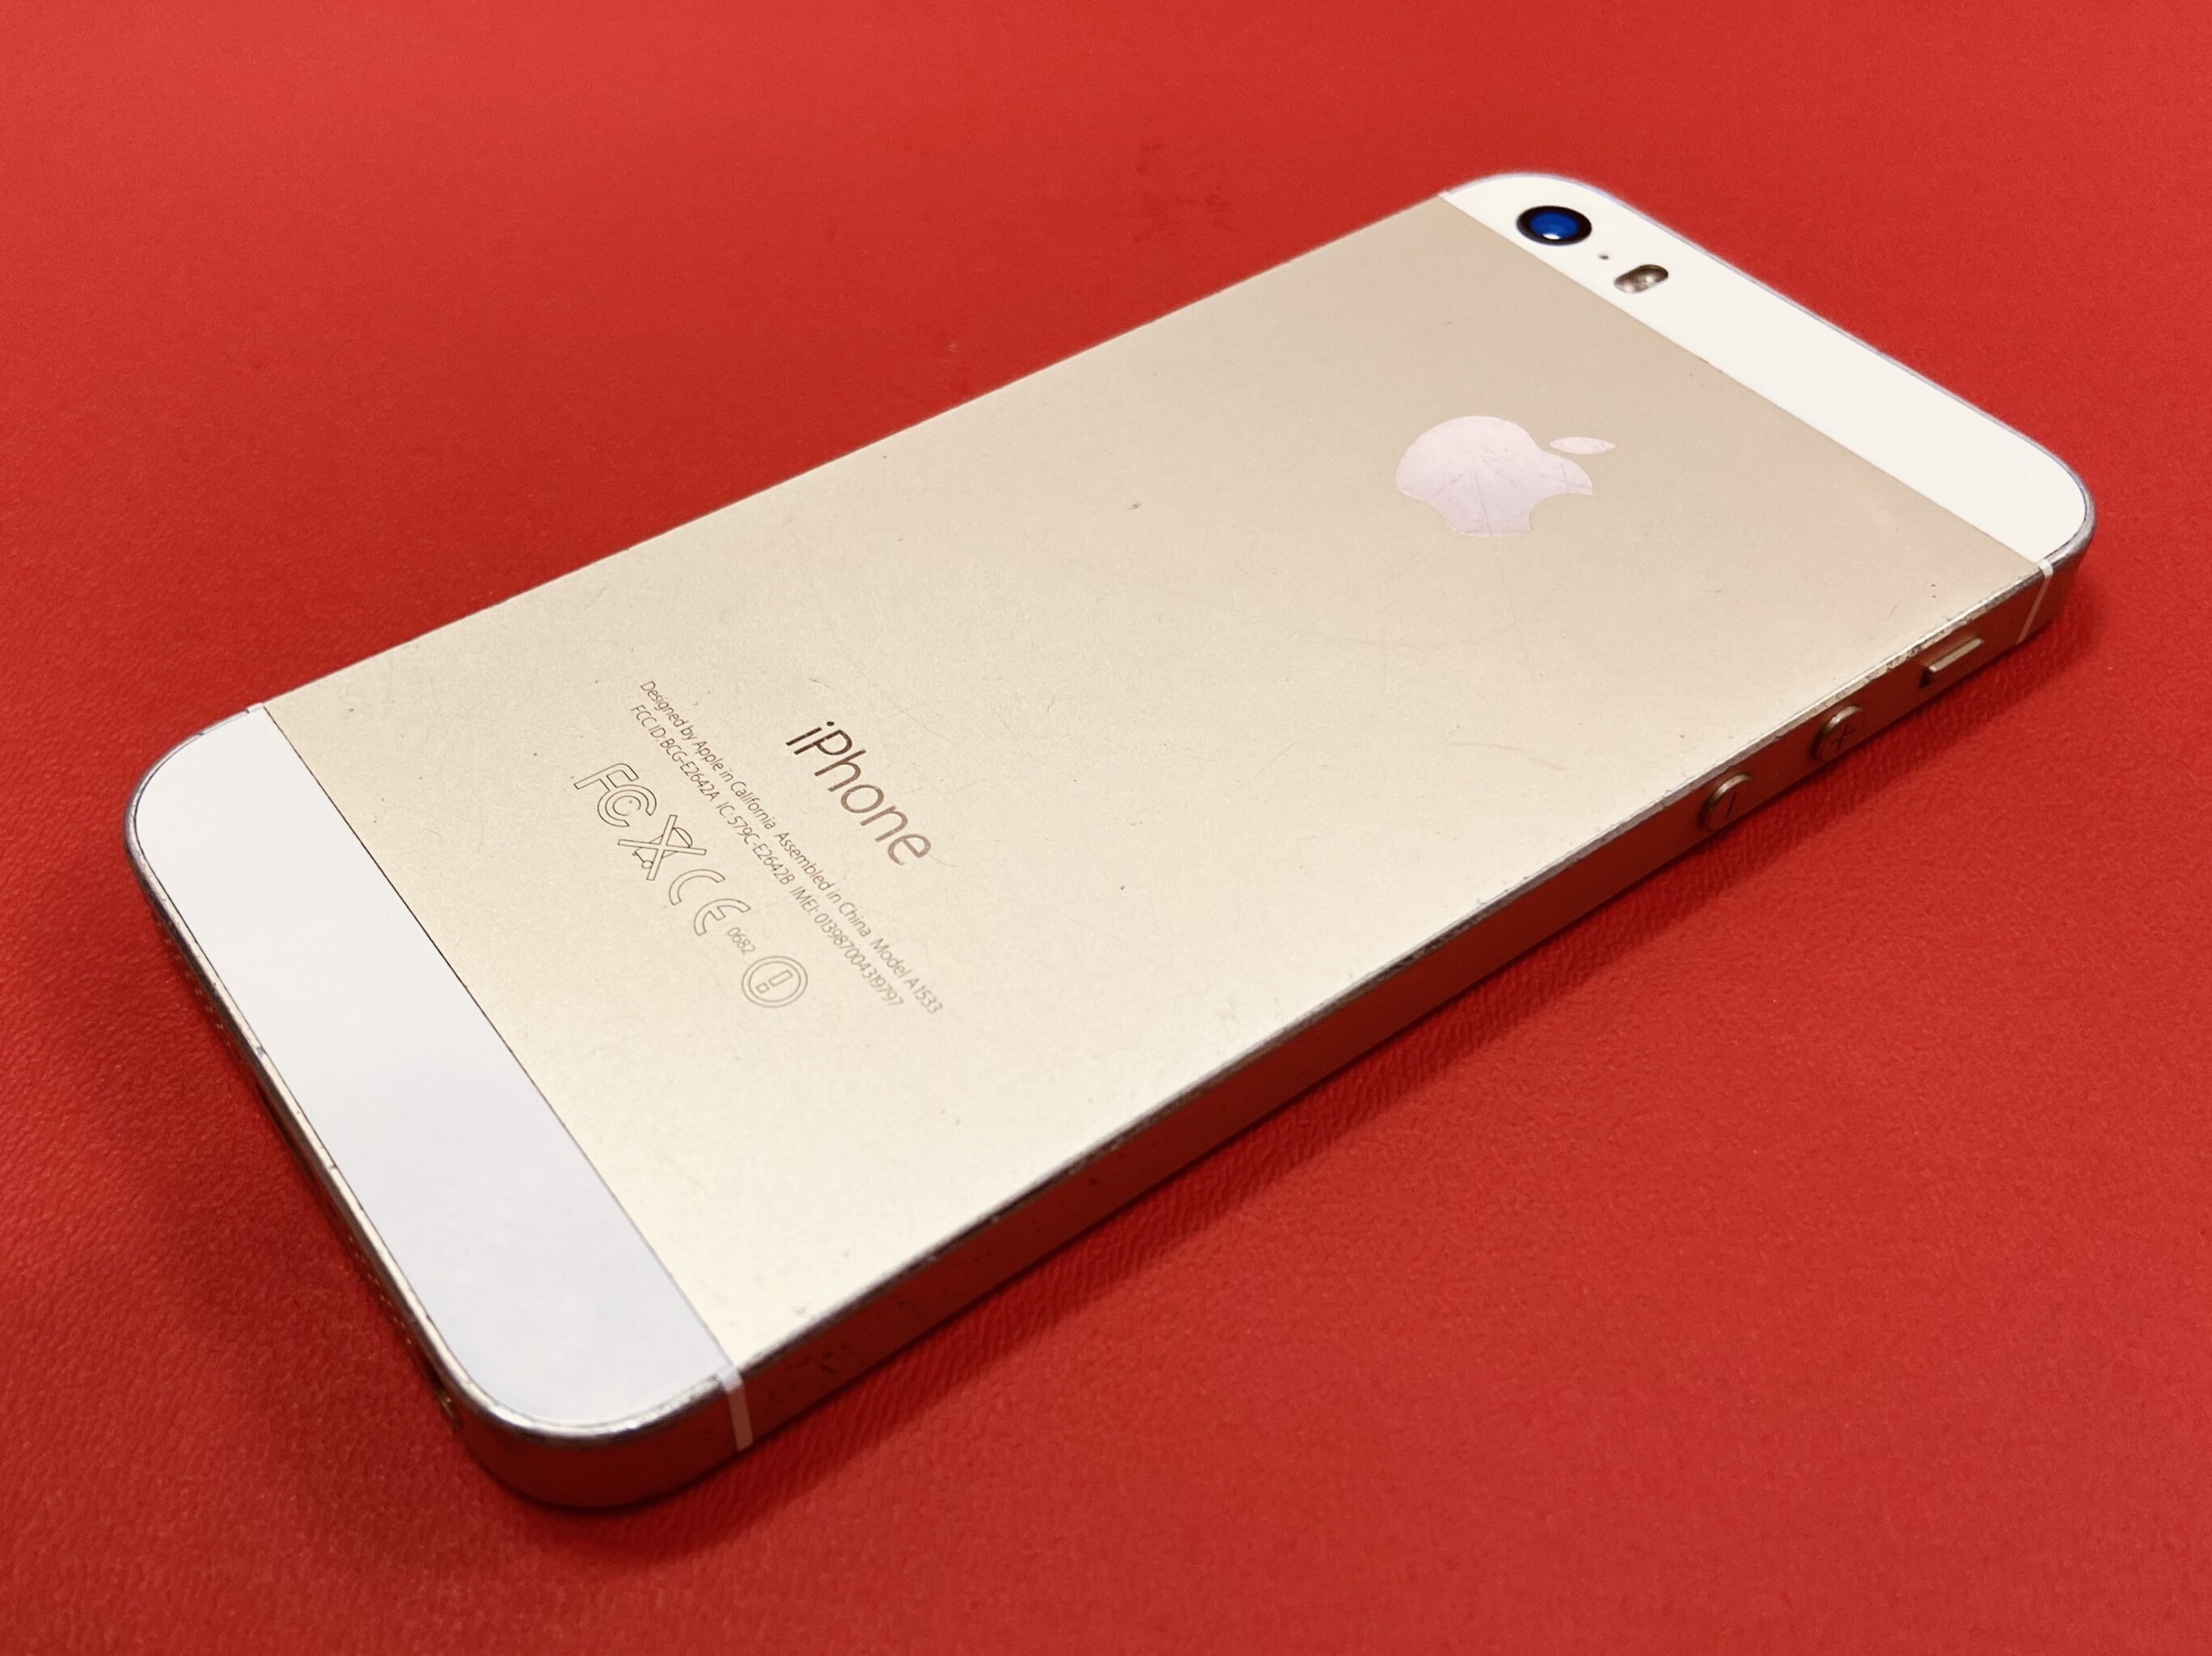 Apple nhắm Việt Nam là thị trường lớn cho iPhone